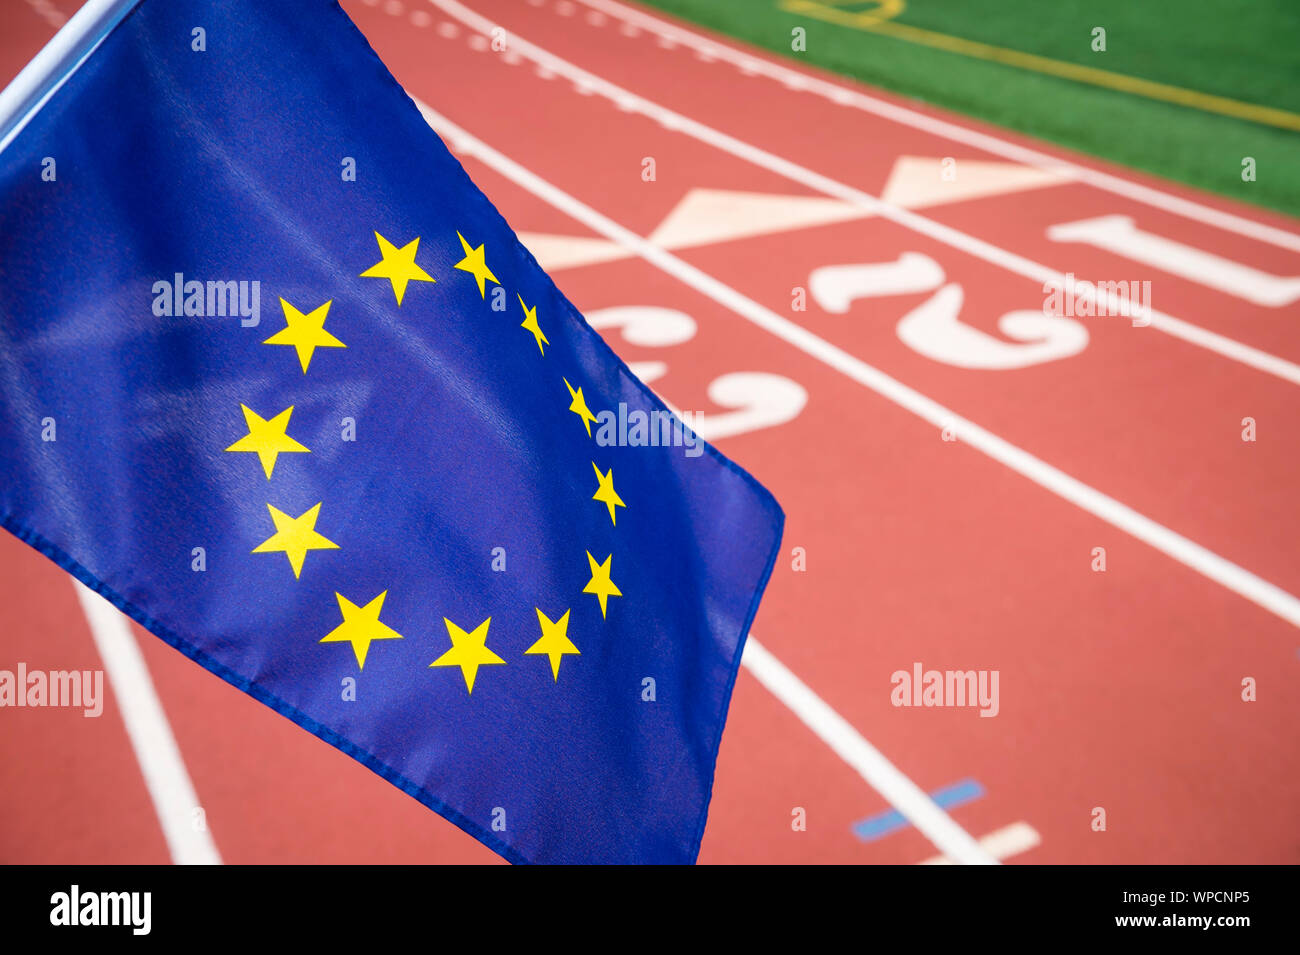 Fahne der Europäischen Union vor einer roten Leichtathletikbahn Hintergrund mit Kopie Raum für Post fliegen - Brexit Wettbewerb Stockfoto